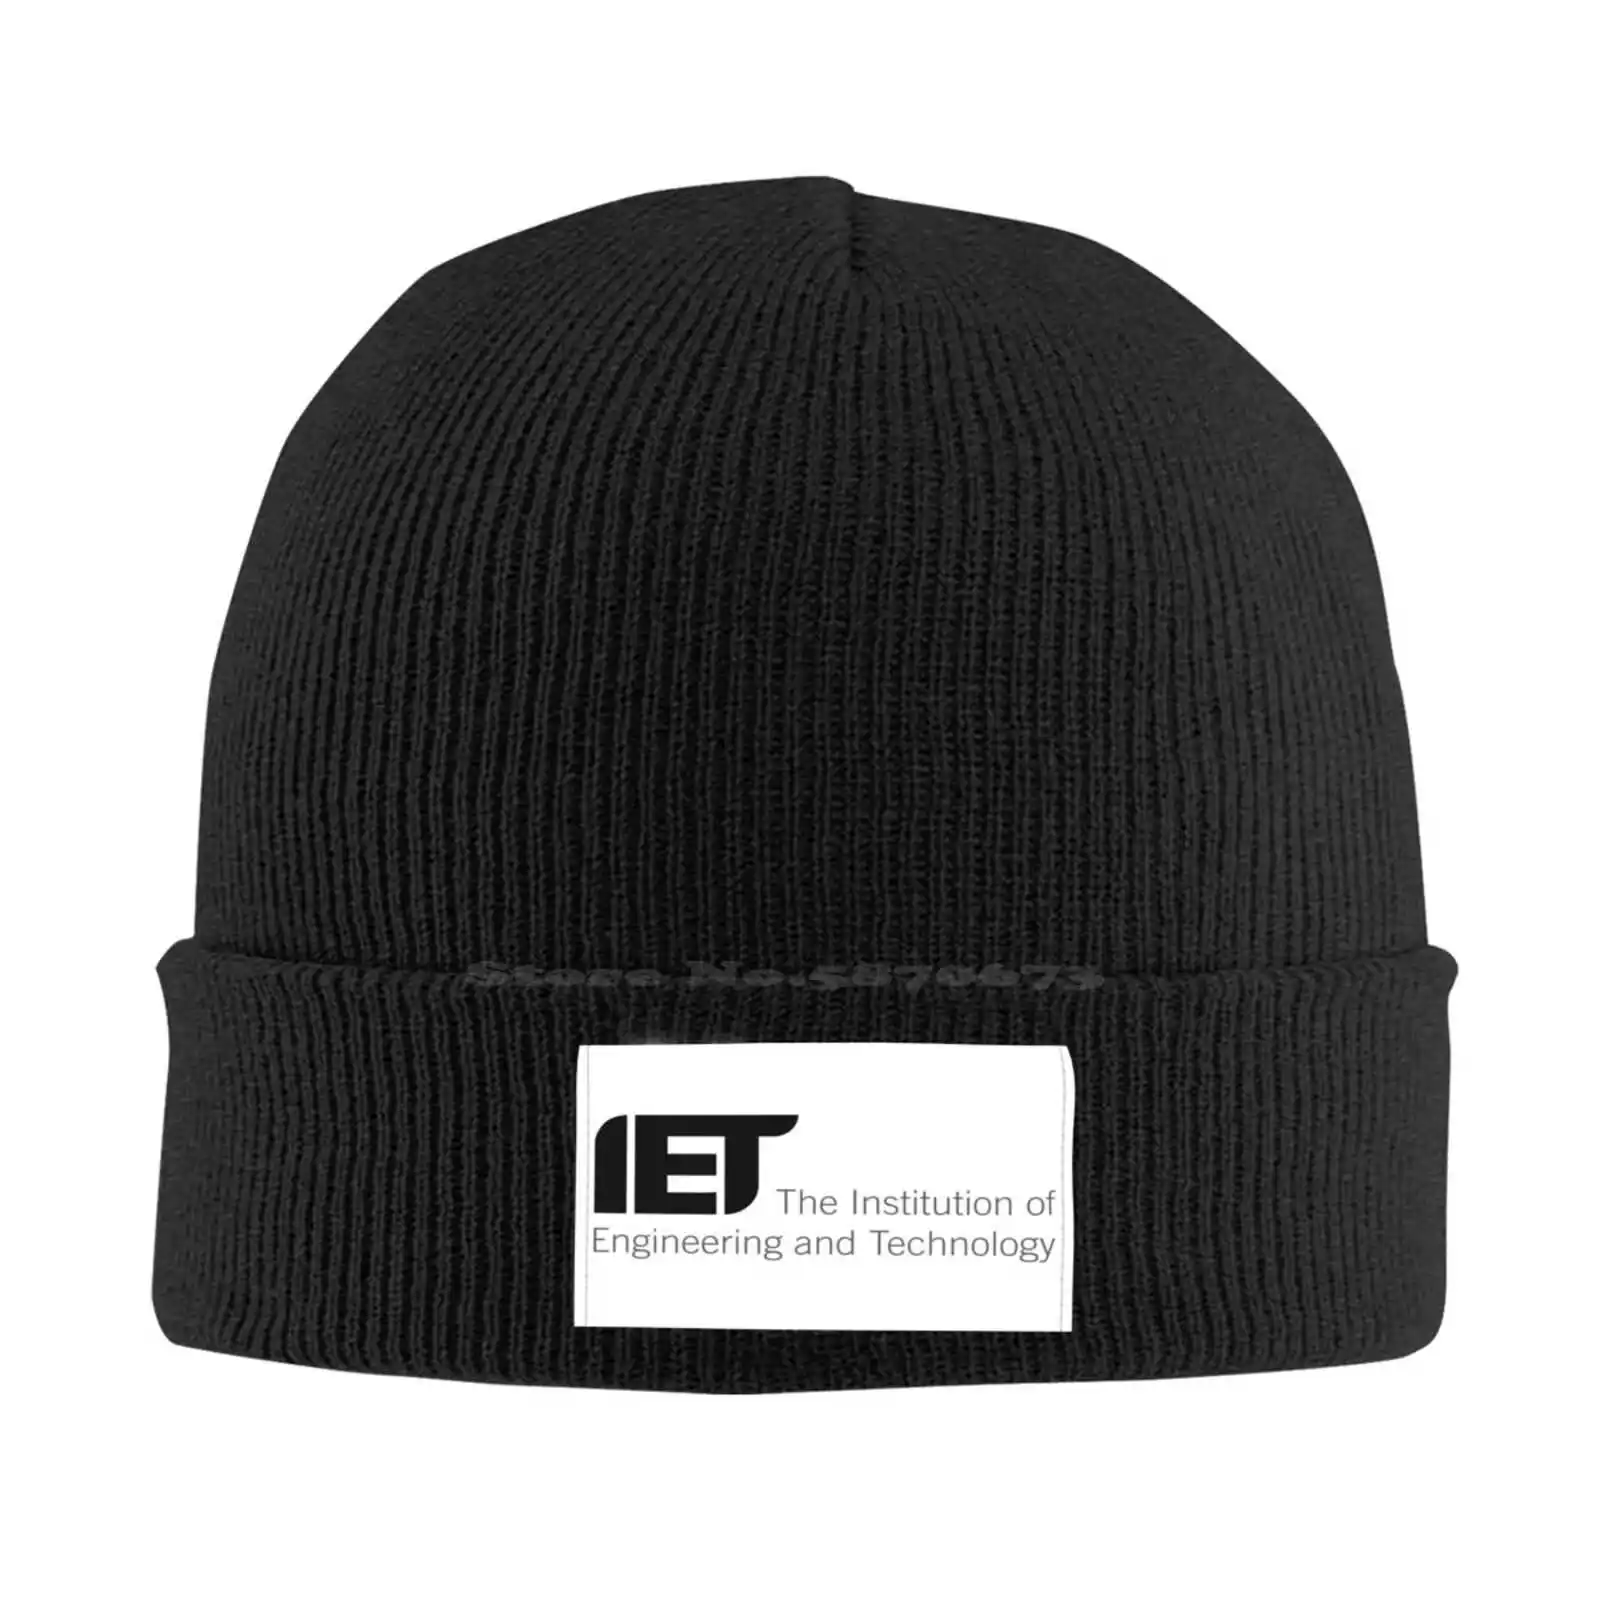 

Учебное заведение инженерных и технологических логотипов, графическая Повседневная бейсбольная кепка вязаная шапка